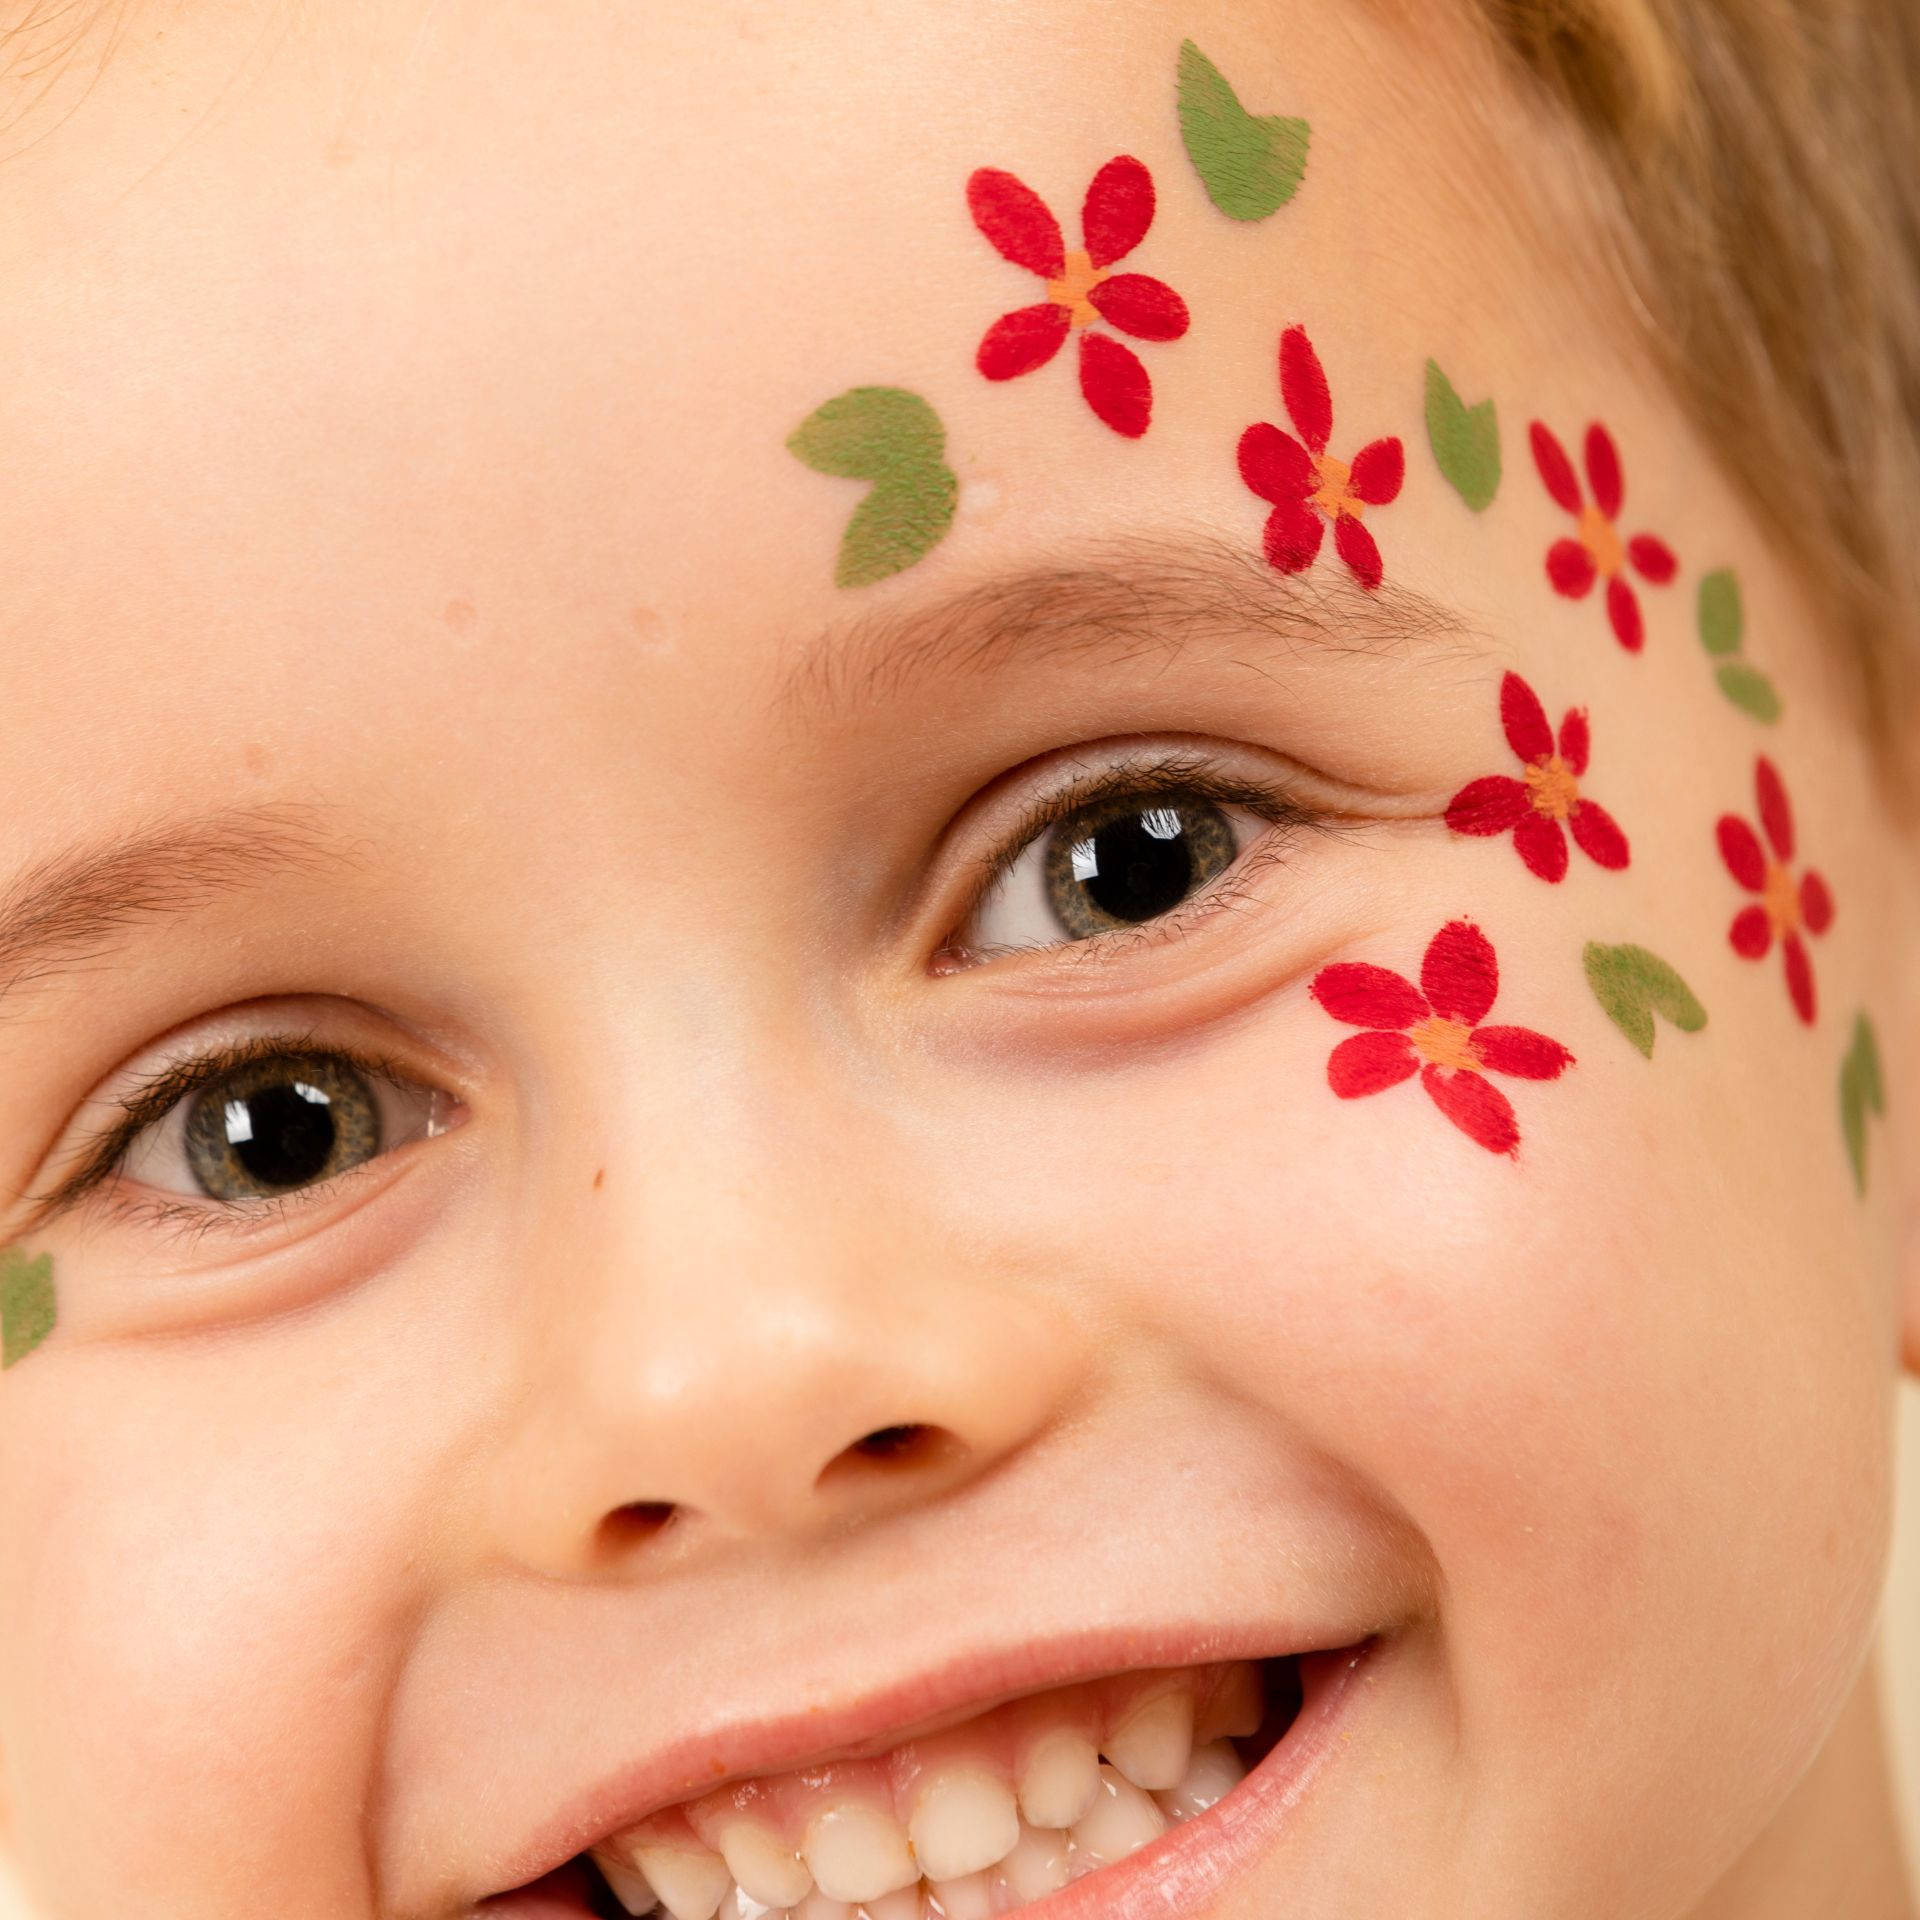 tattoopen rouge maquillage enfant petit garçon dessin fleurs sur peau rouge nailmatic kids